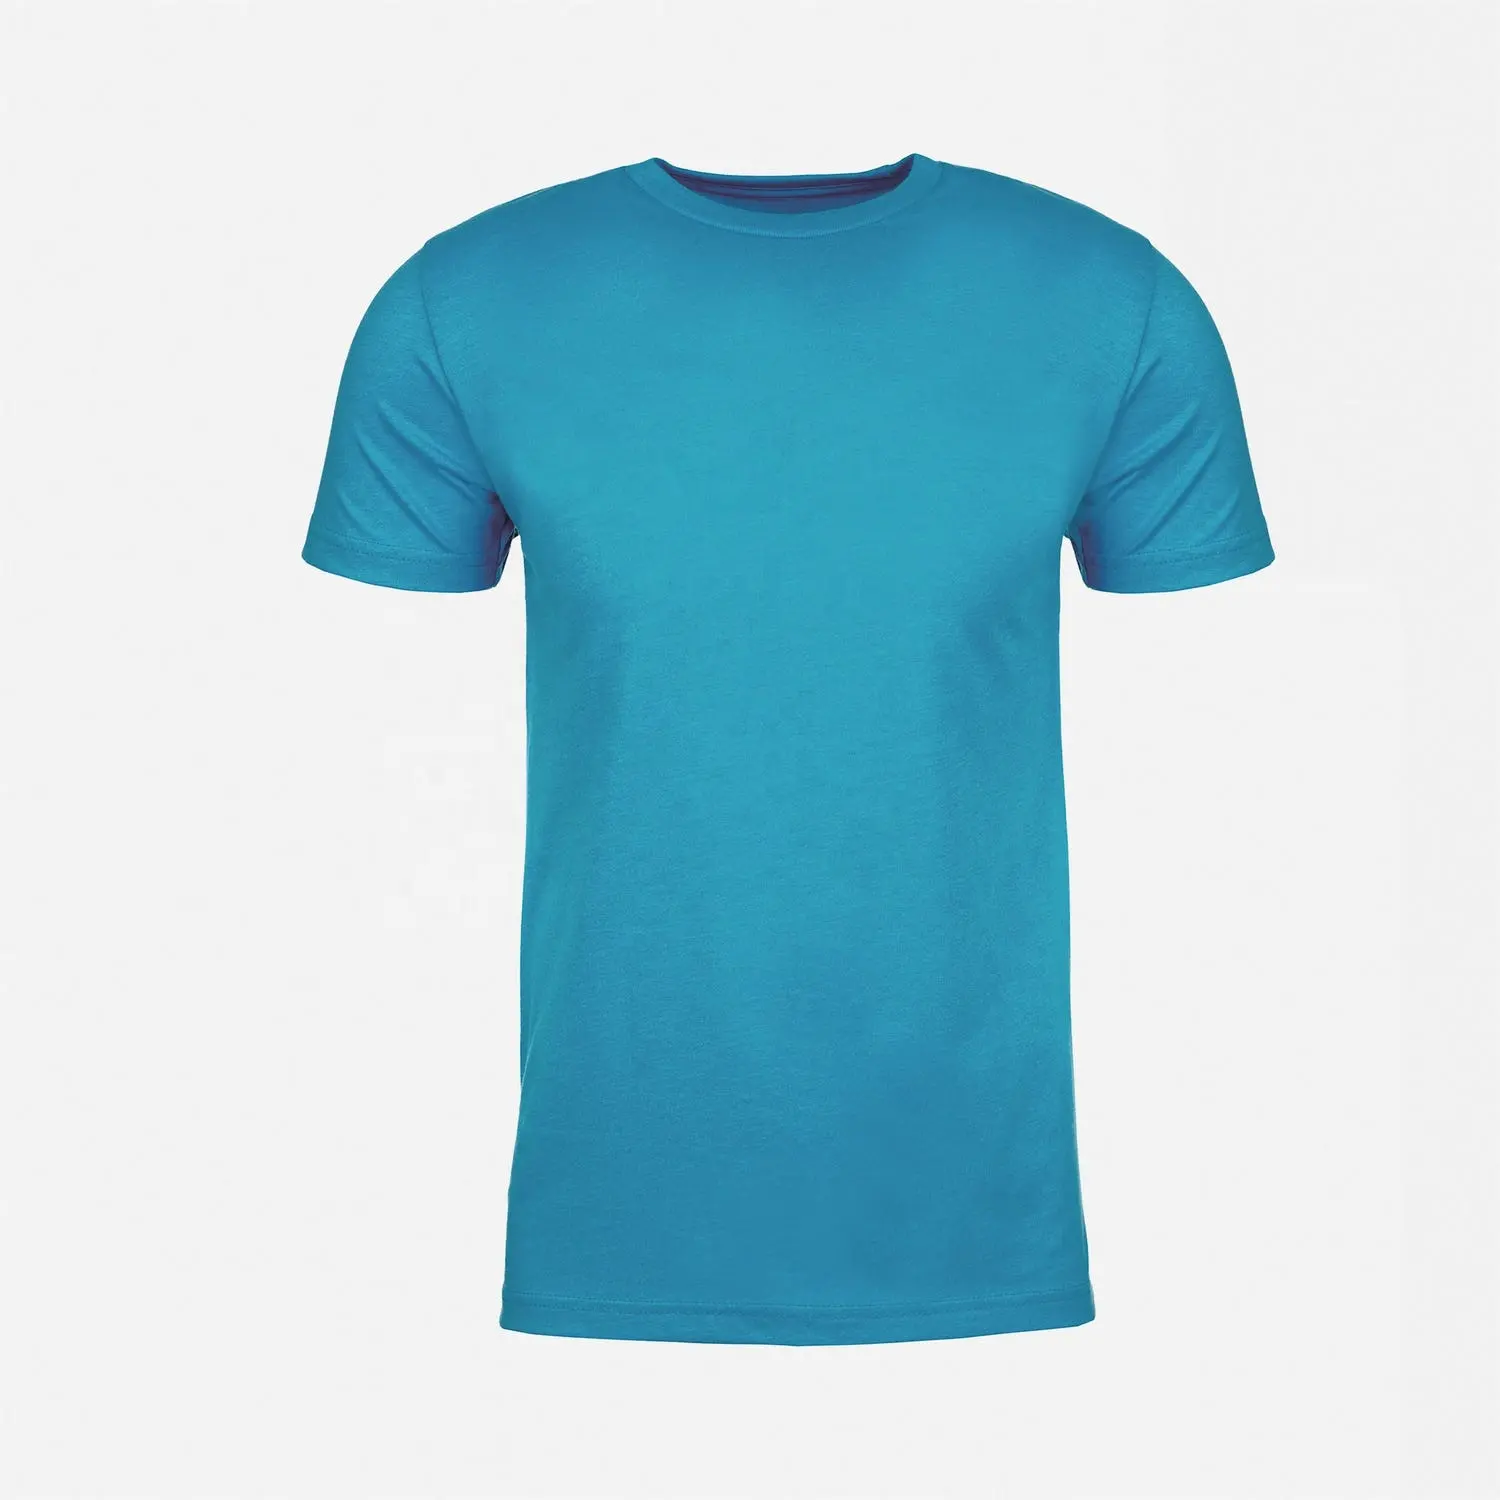 Chất lượng cao tùy chỉnh mùa hè unisex cấp độ tiếp theo trang phục 6210 unisex CVC T-Shirt màu Ngọc Lam trống thoáng khí T-Shirt